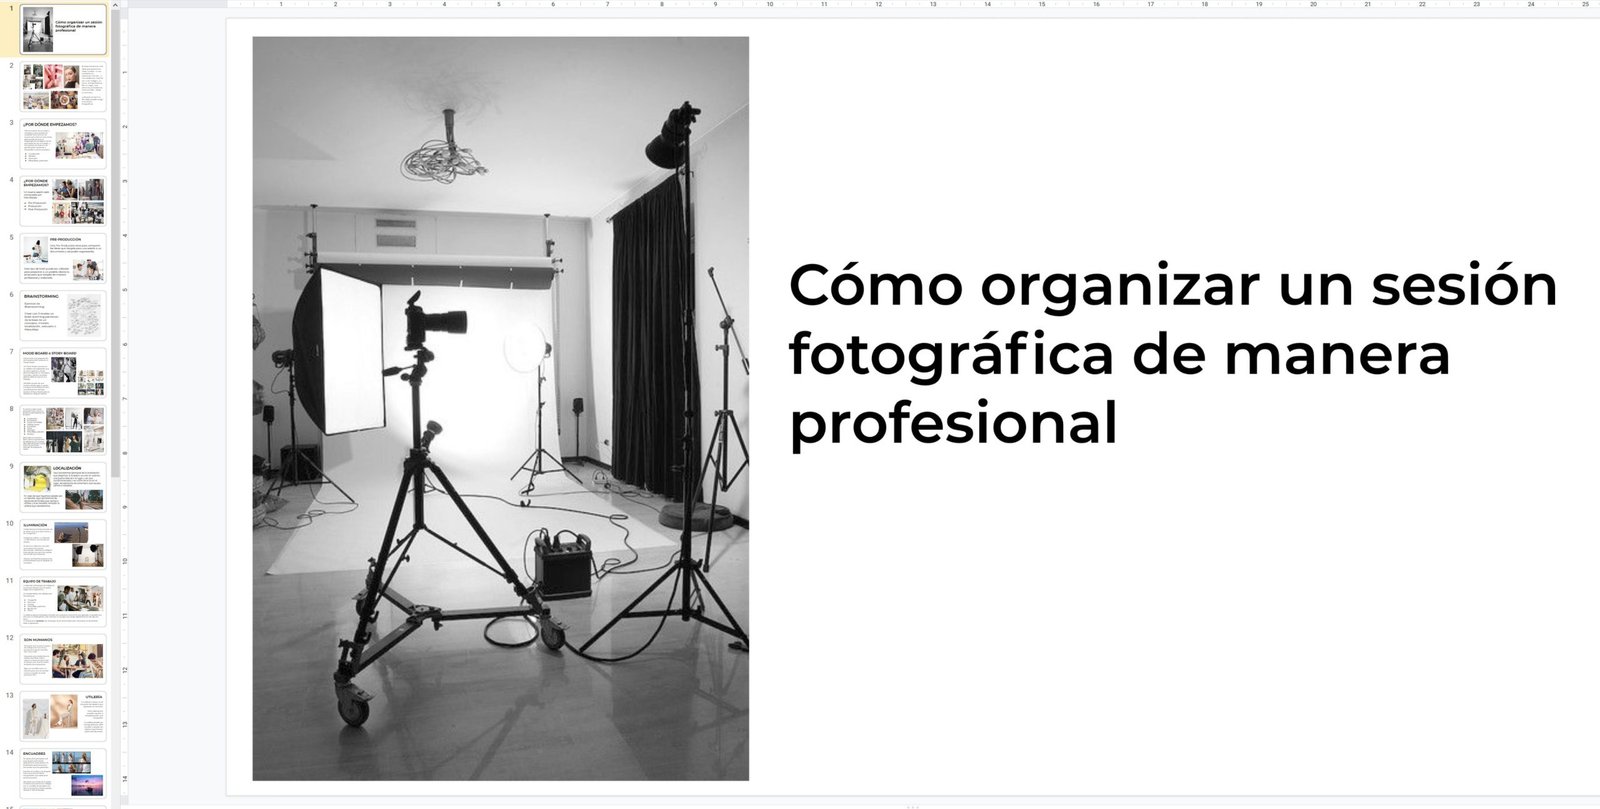 Organizar una sesión de fotos de manera profesional workshop formación fotográfica curso fotografía diseño y foto